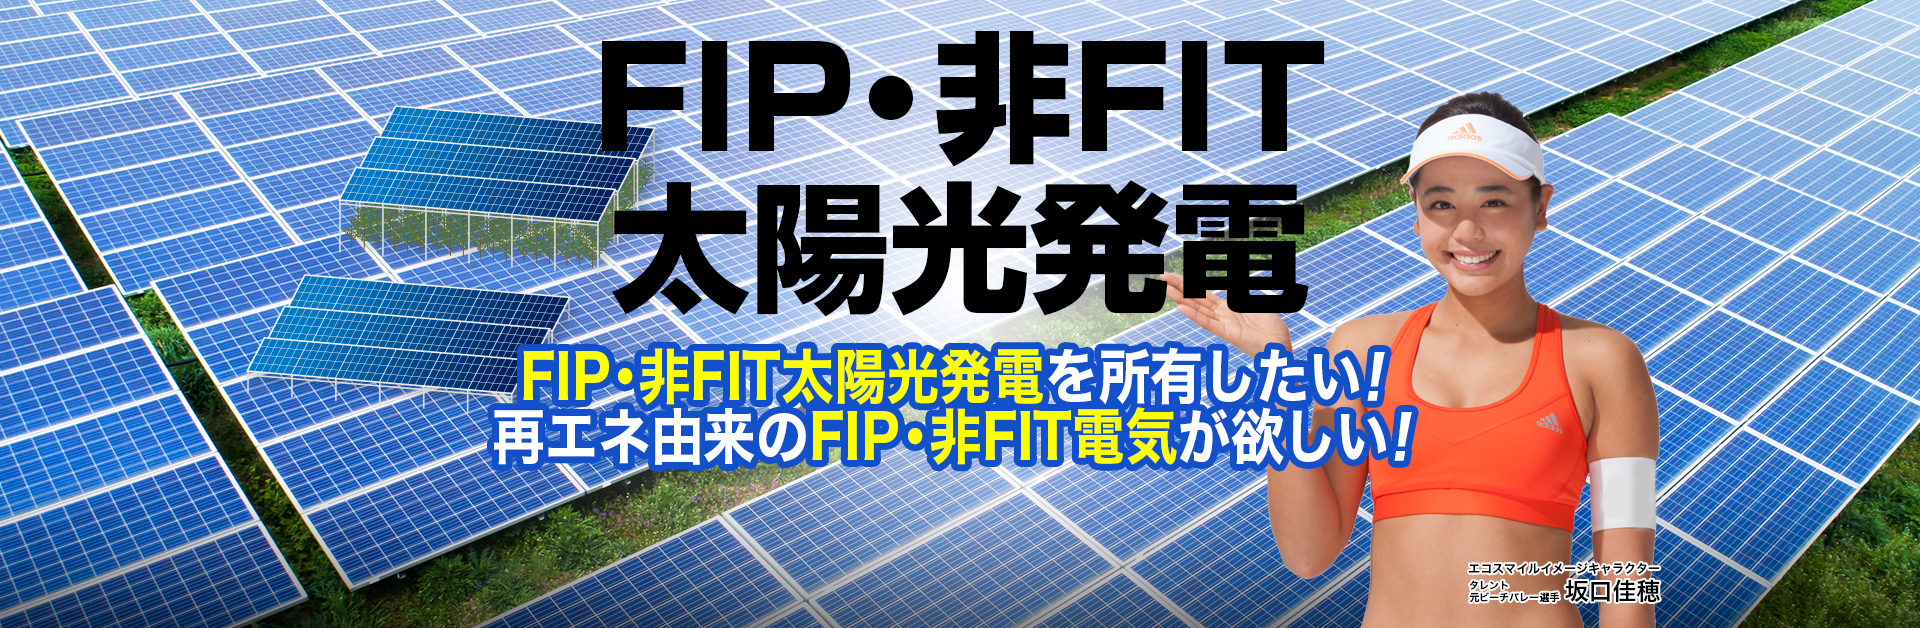 非FIT太陽光発電